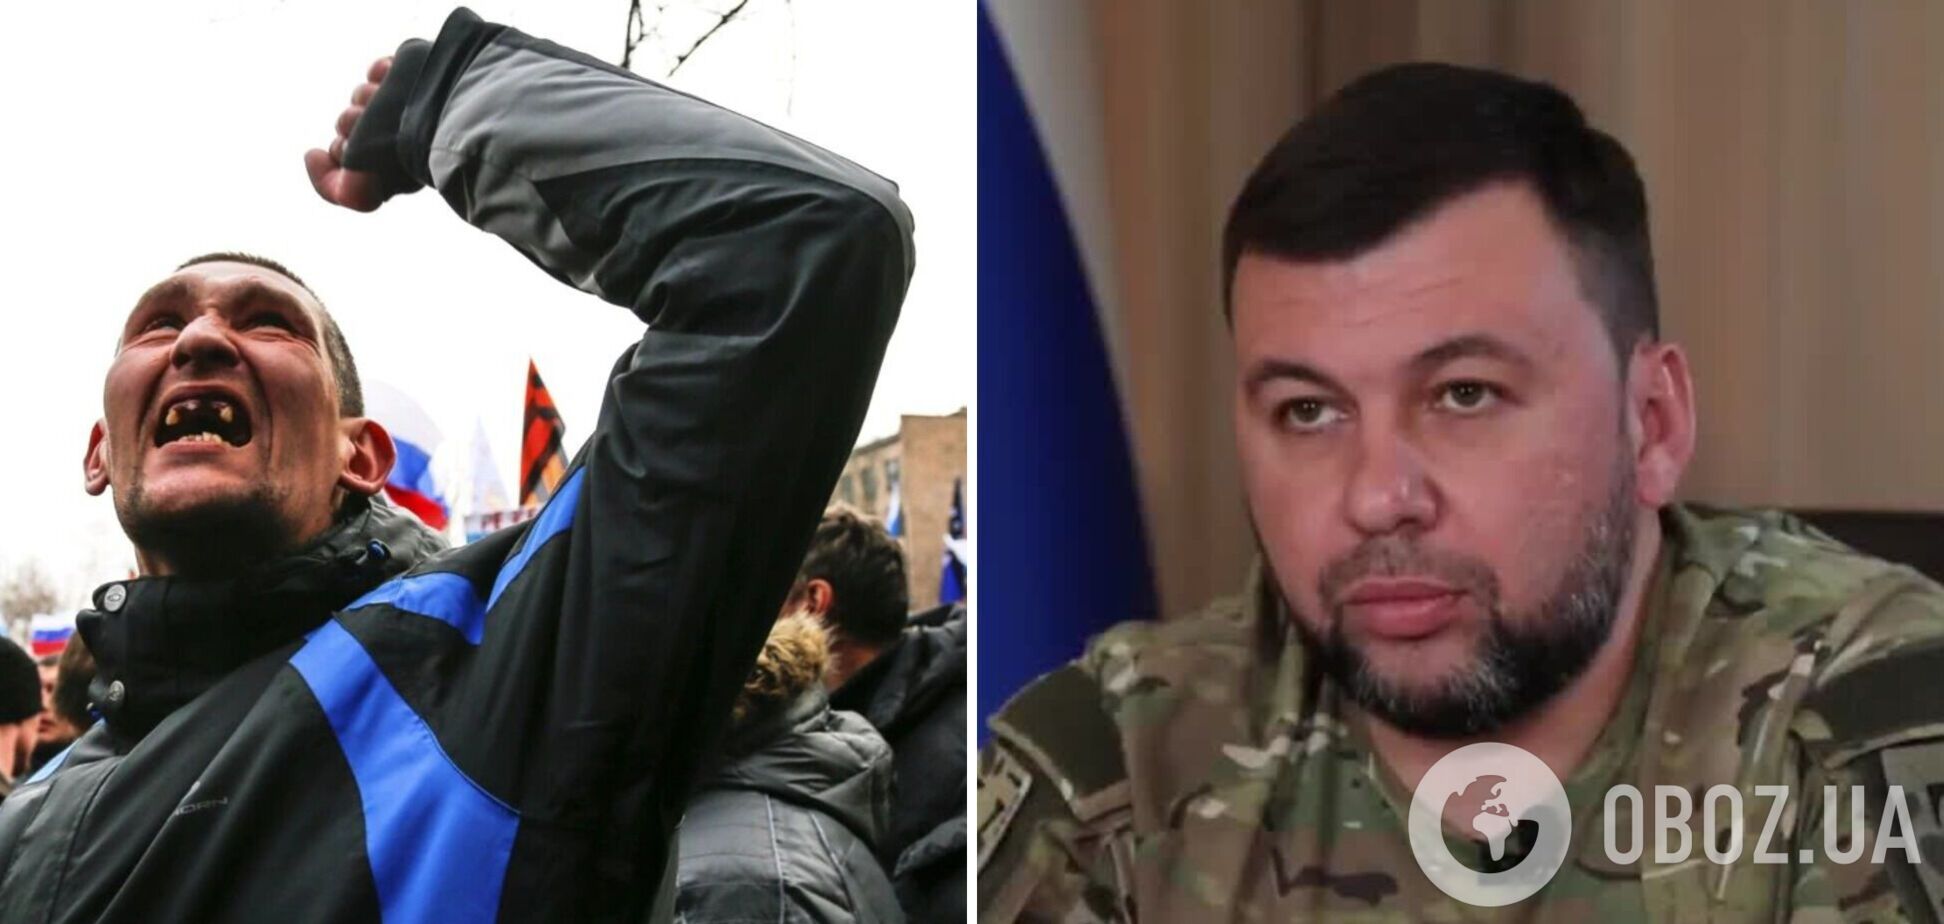 Скандальне інтерв’ю злочинця Пушиліна: як вождь сепаратистів став позитивним героєм в сербському ЗМІ? 